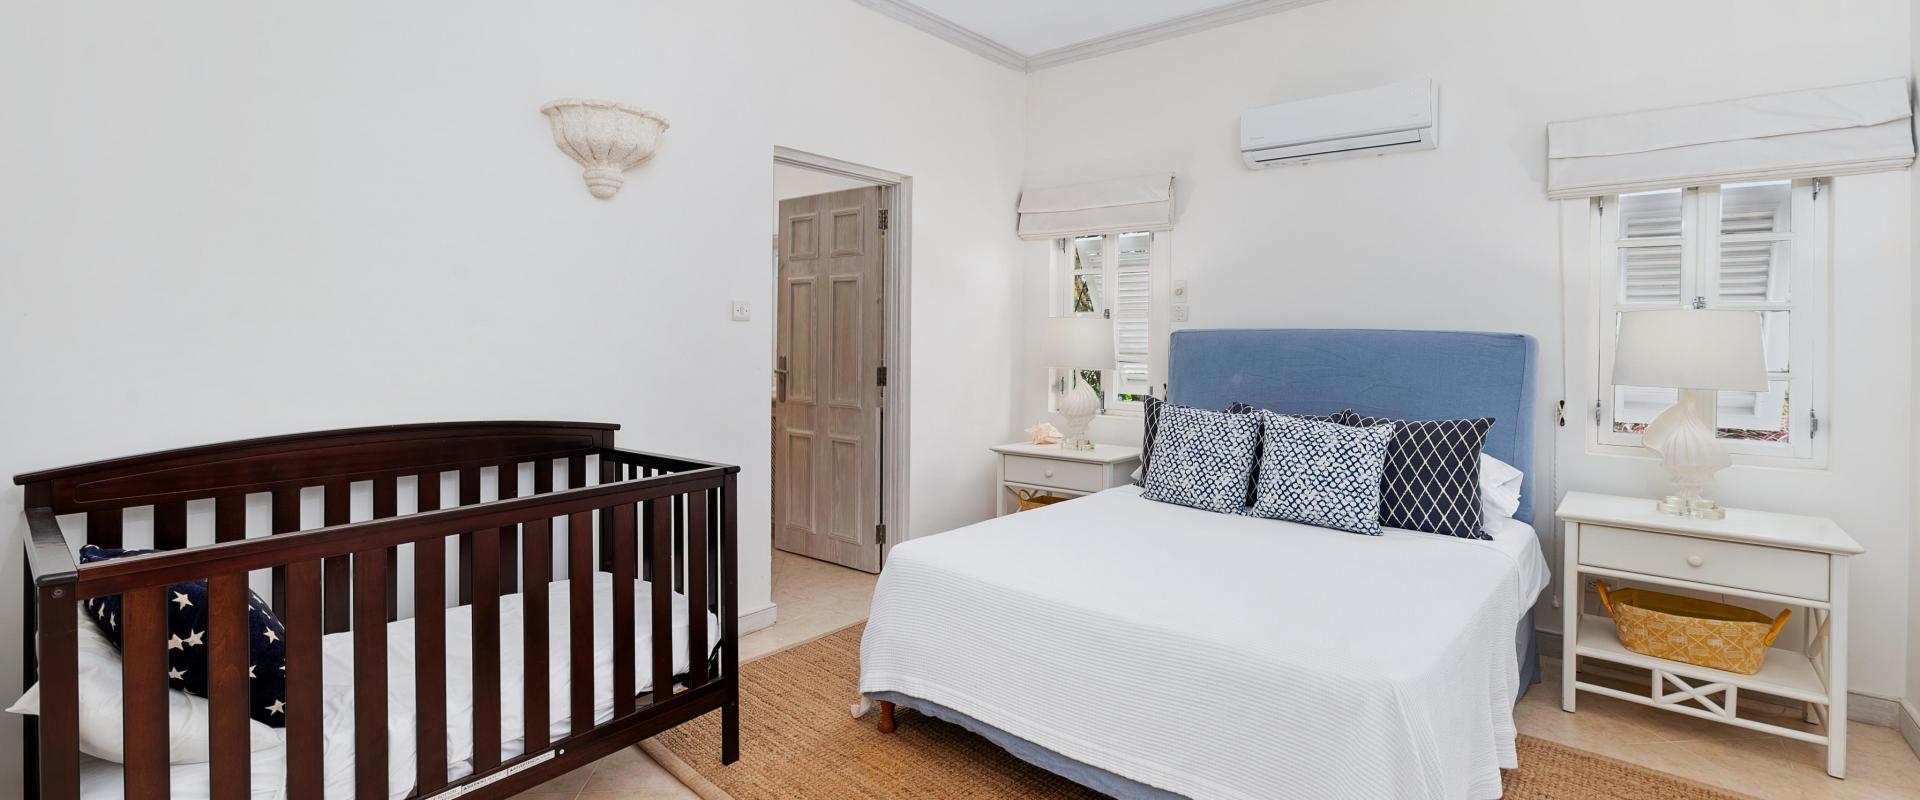 Villa Rosa Holiday Rental Villa In Royal Westmoreland Barbados Bedroom 2 With Complimentary Baby Crib